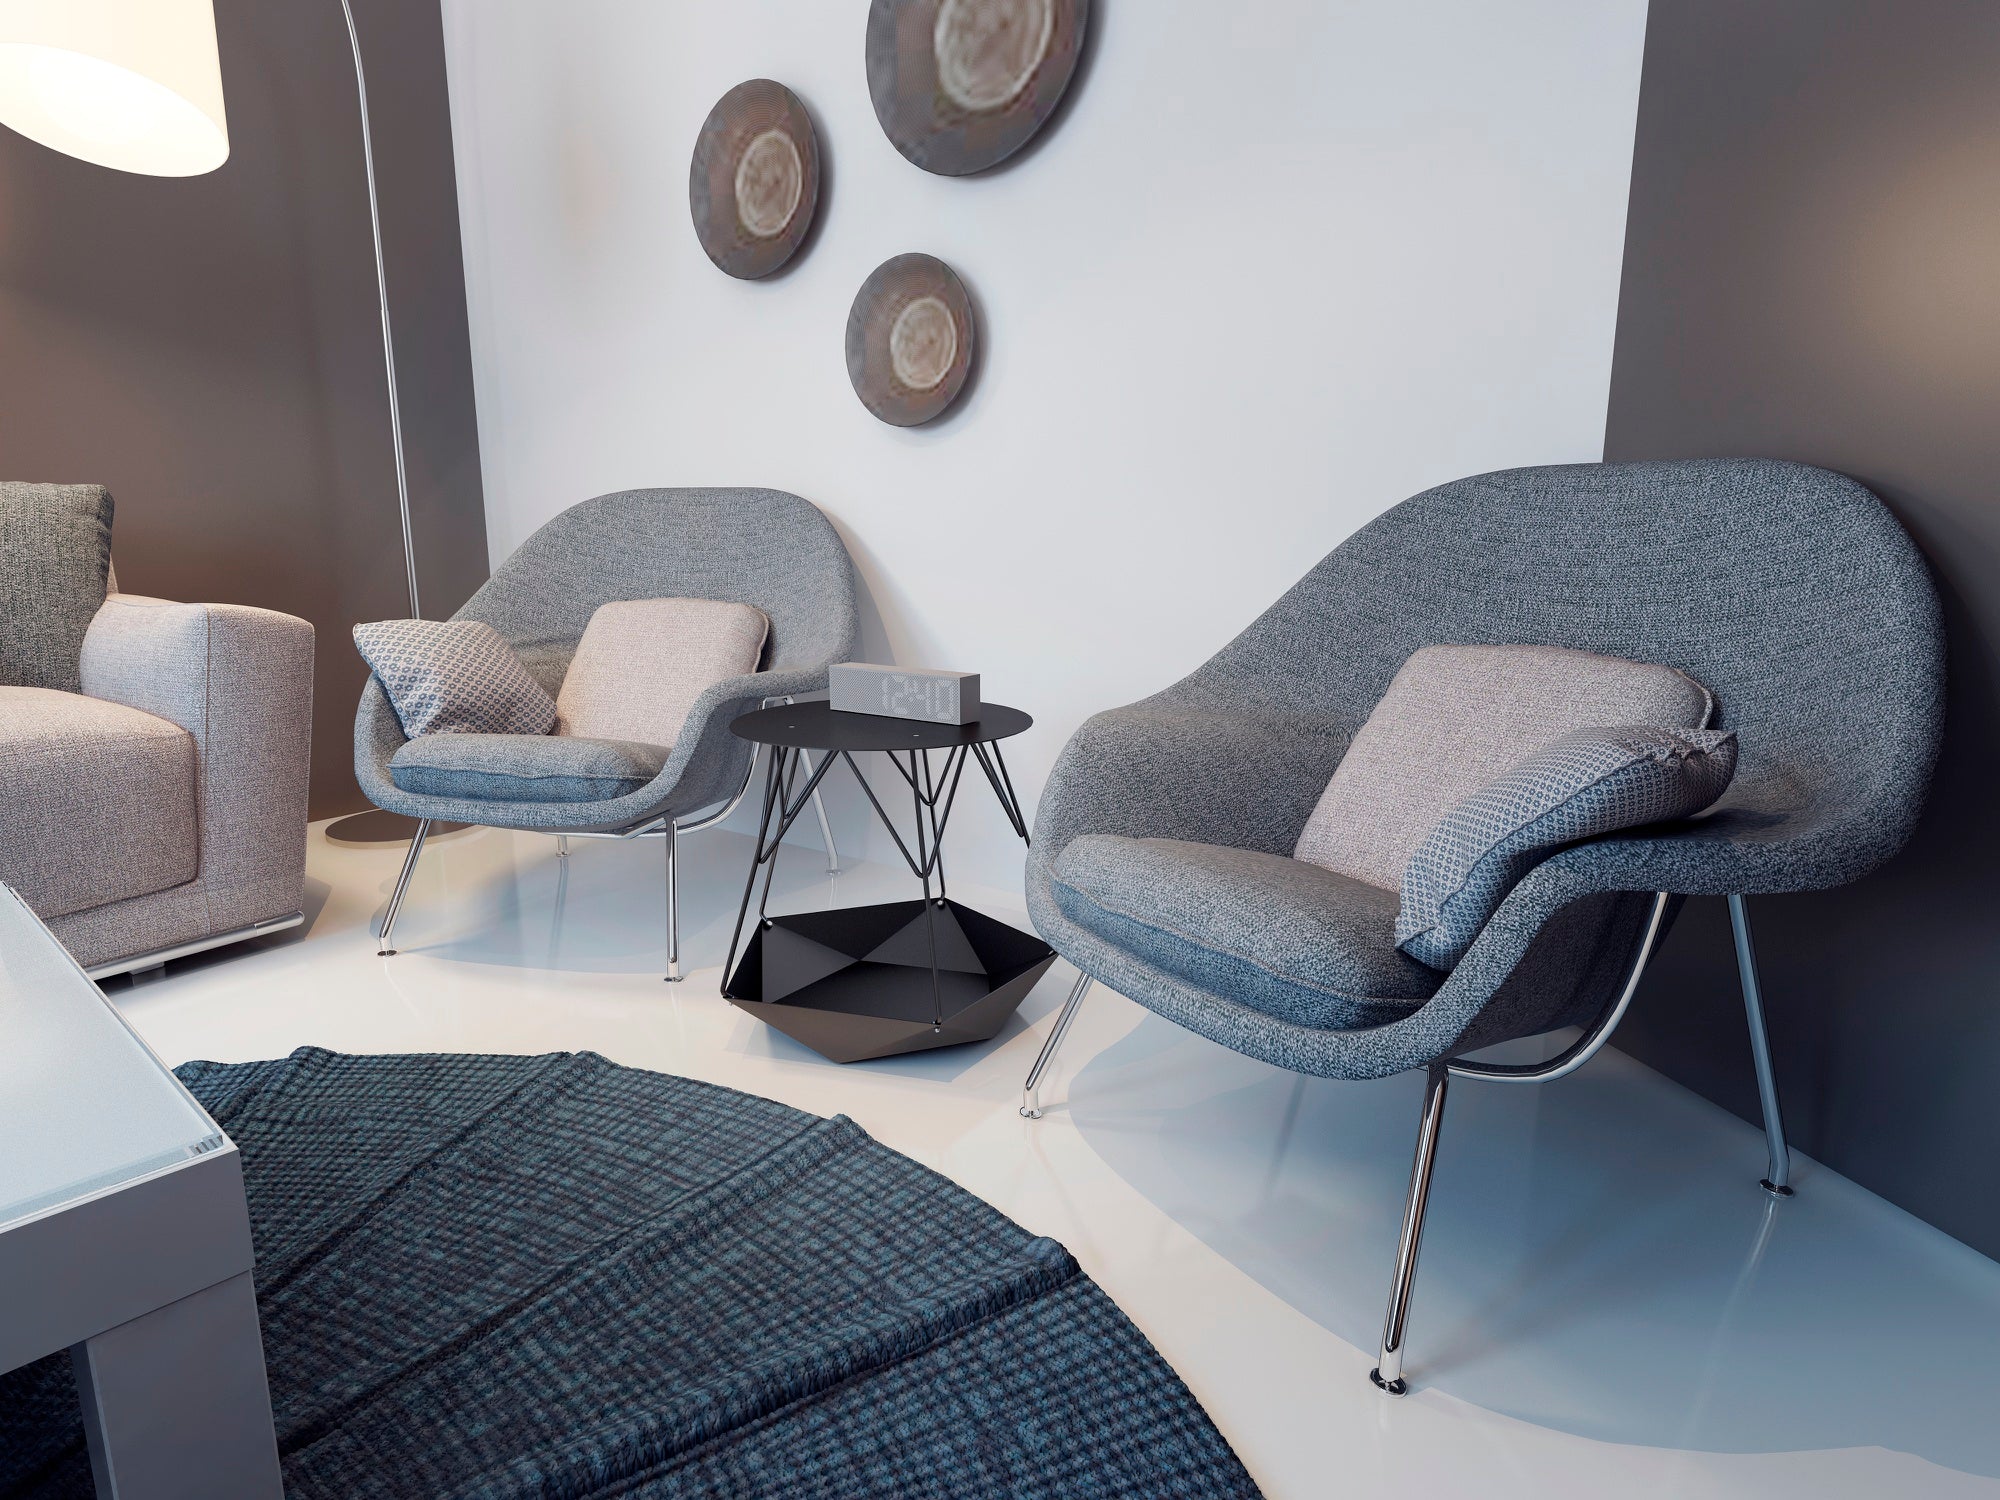 2. Najnowsze trendy w fotelach wypoczynkowych - materiały i kształty